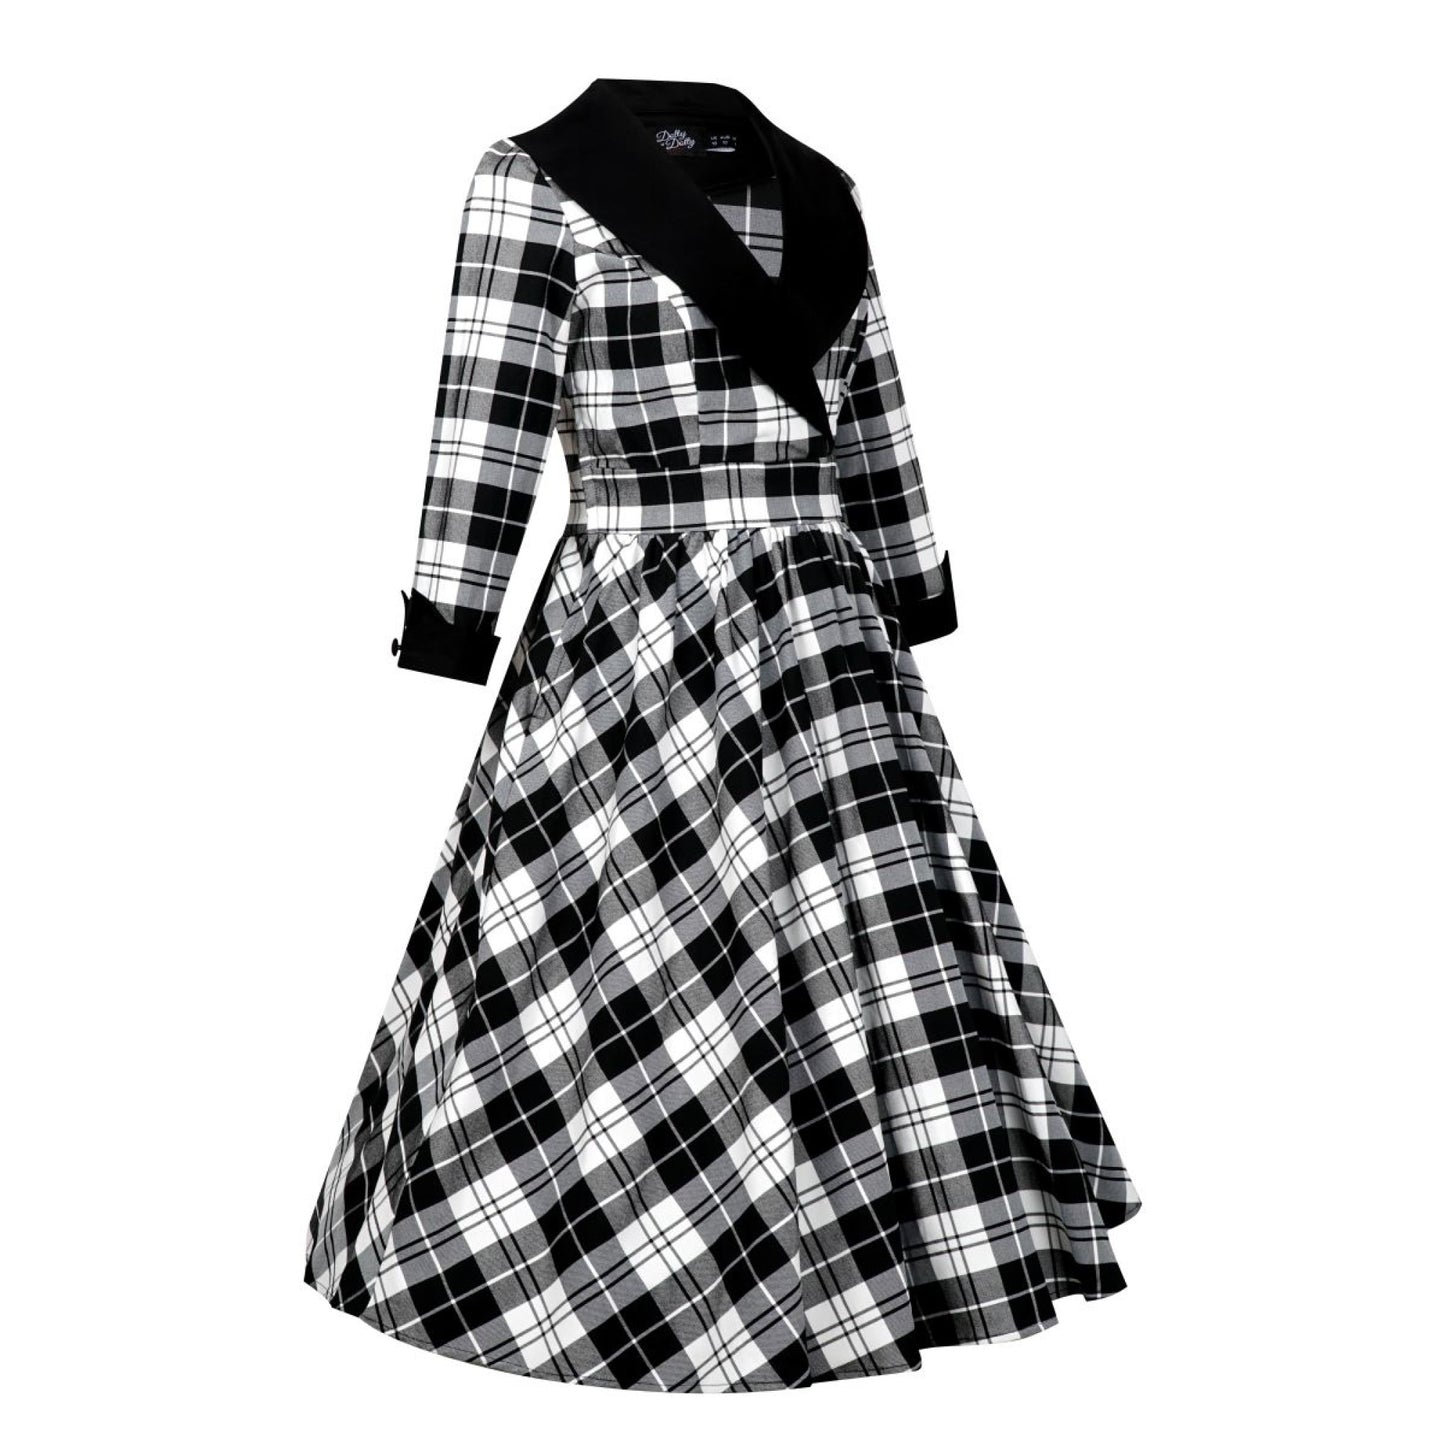 Tiffany Kleid Tartan schwarz